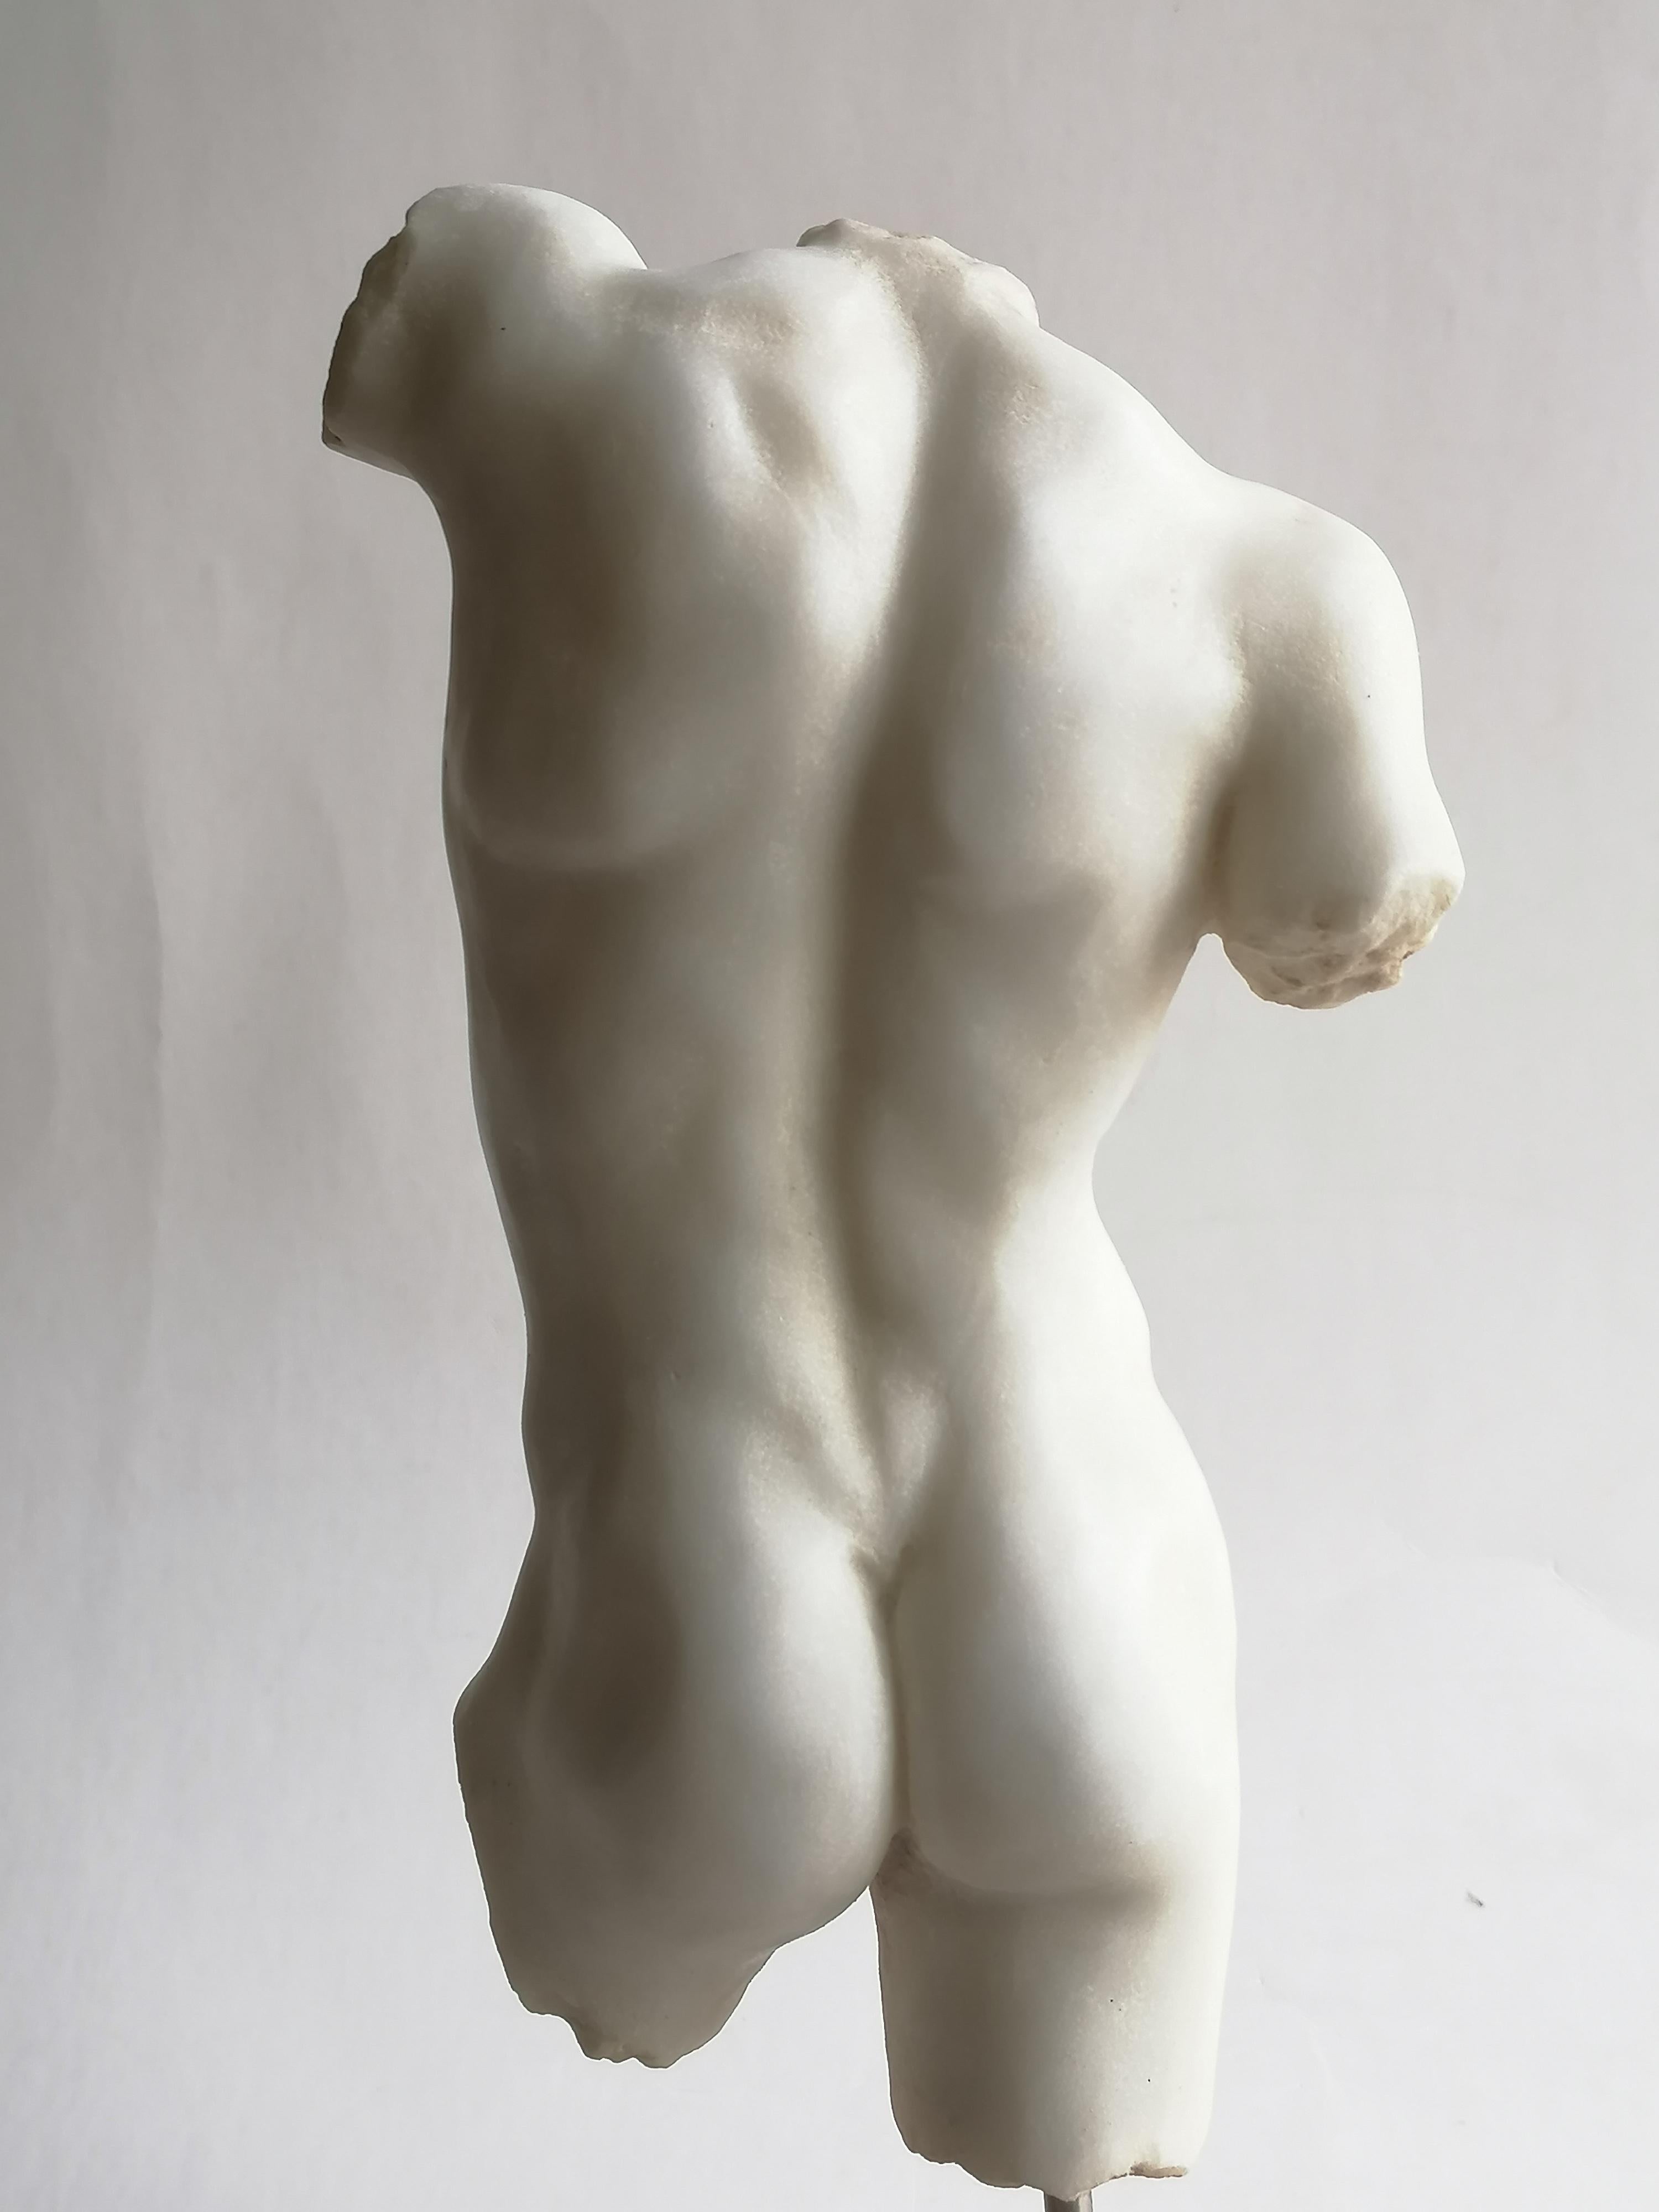 Late 20th Century Torso maschile classico scolpito su marmo bianco di Carrara